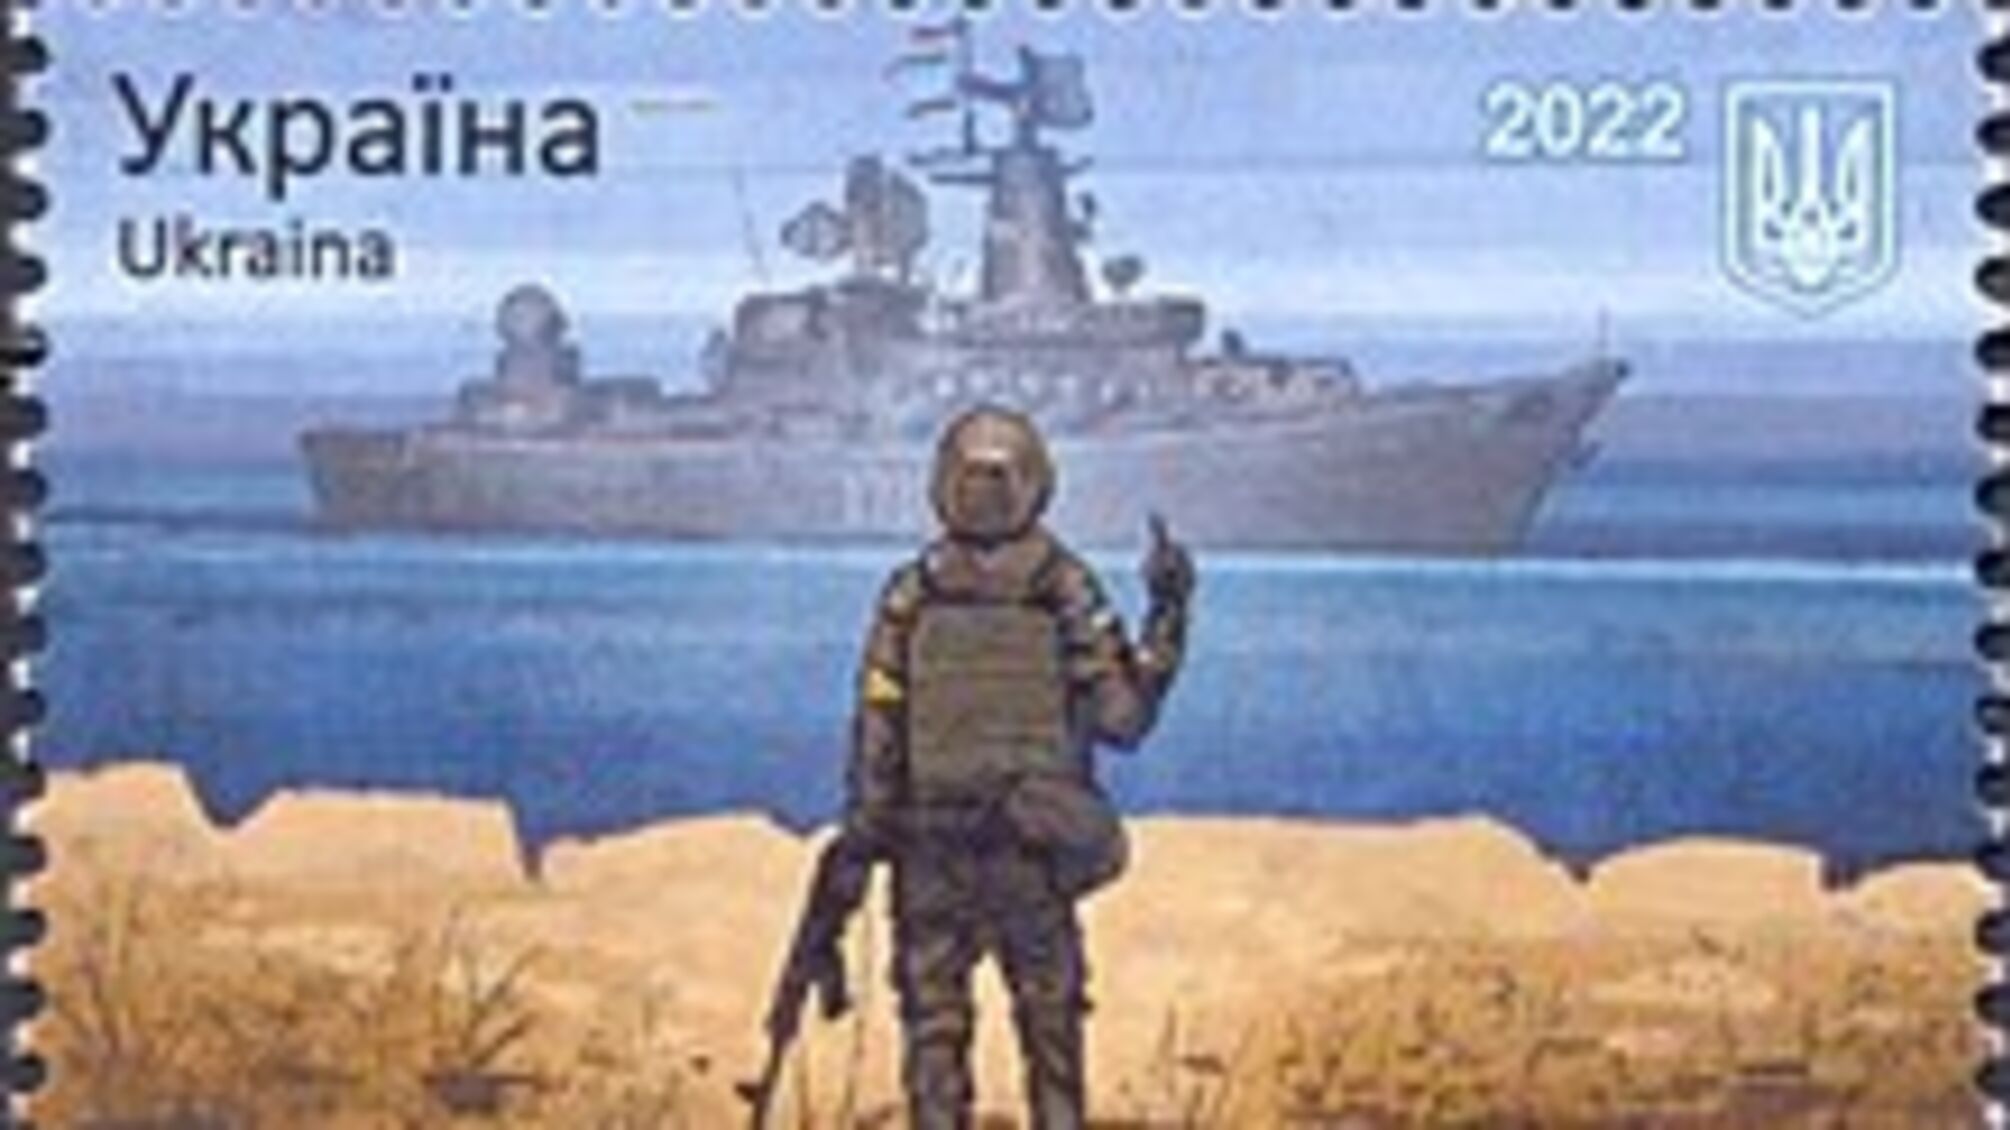 Вновь украли идею: россия выпустила почтовую марку с дизайном, идентичным украинскому 'русскому кораблю' (фото)